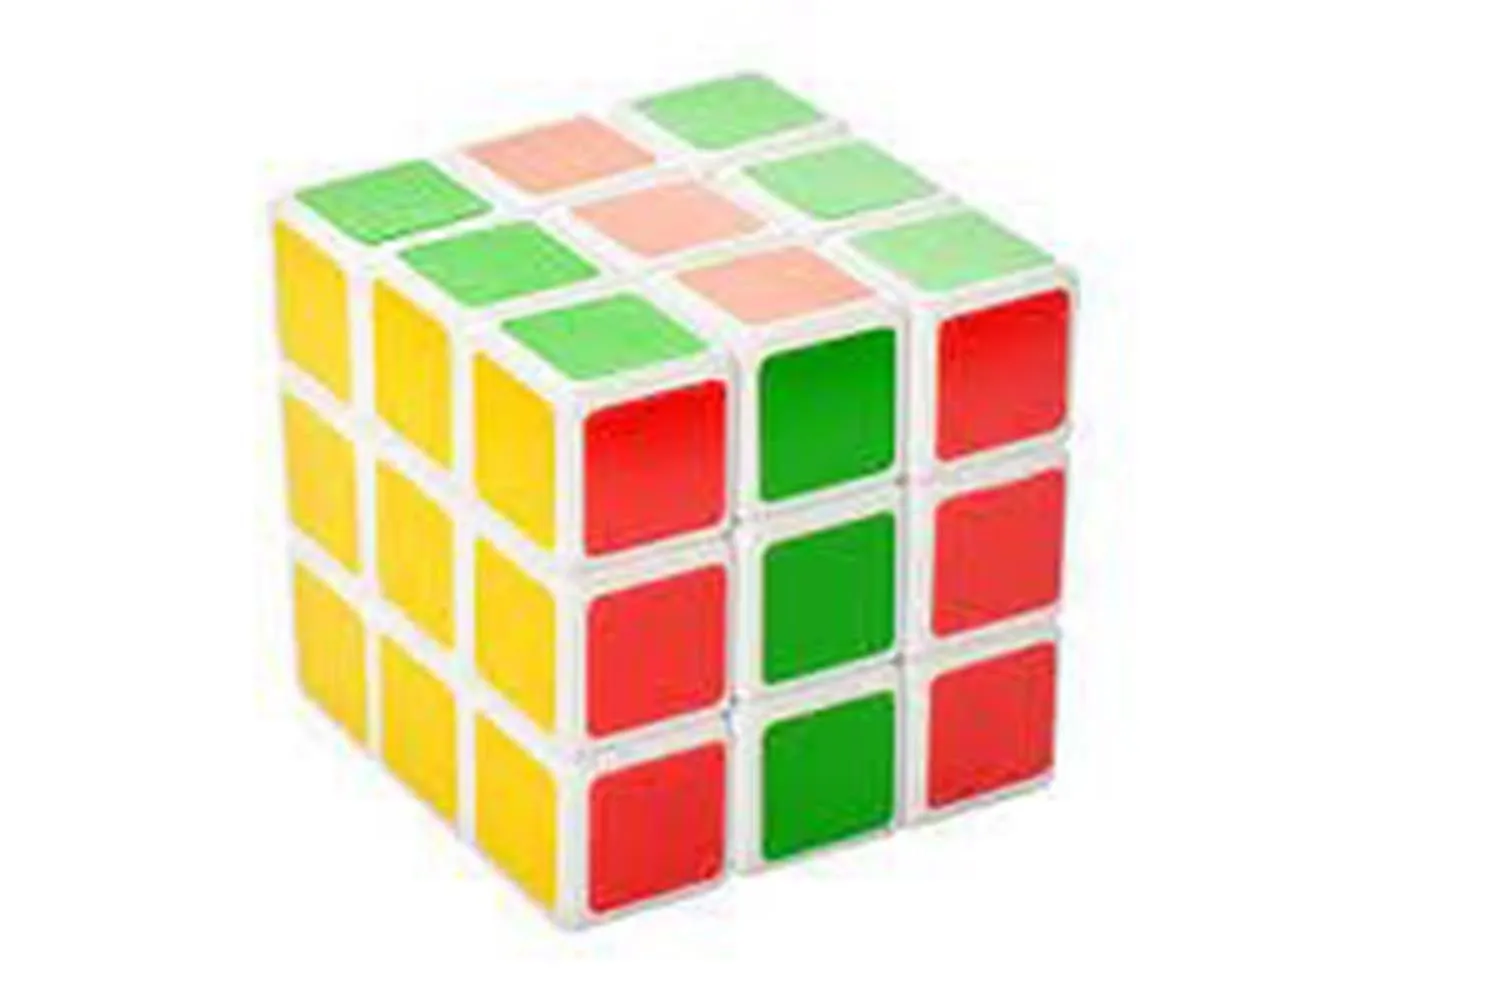 Кубик Рубика 4х4 MoYu Cube развивающая игра для детей и взрослых